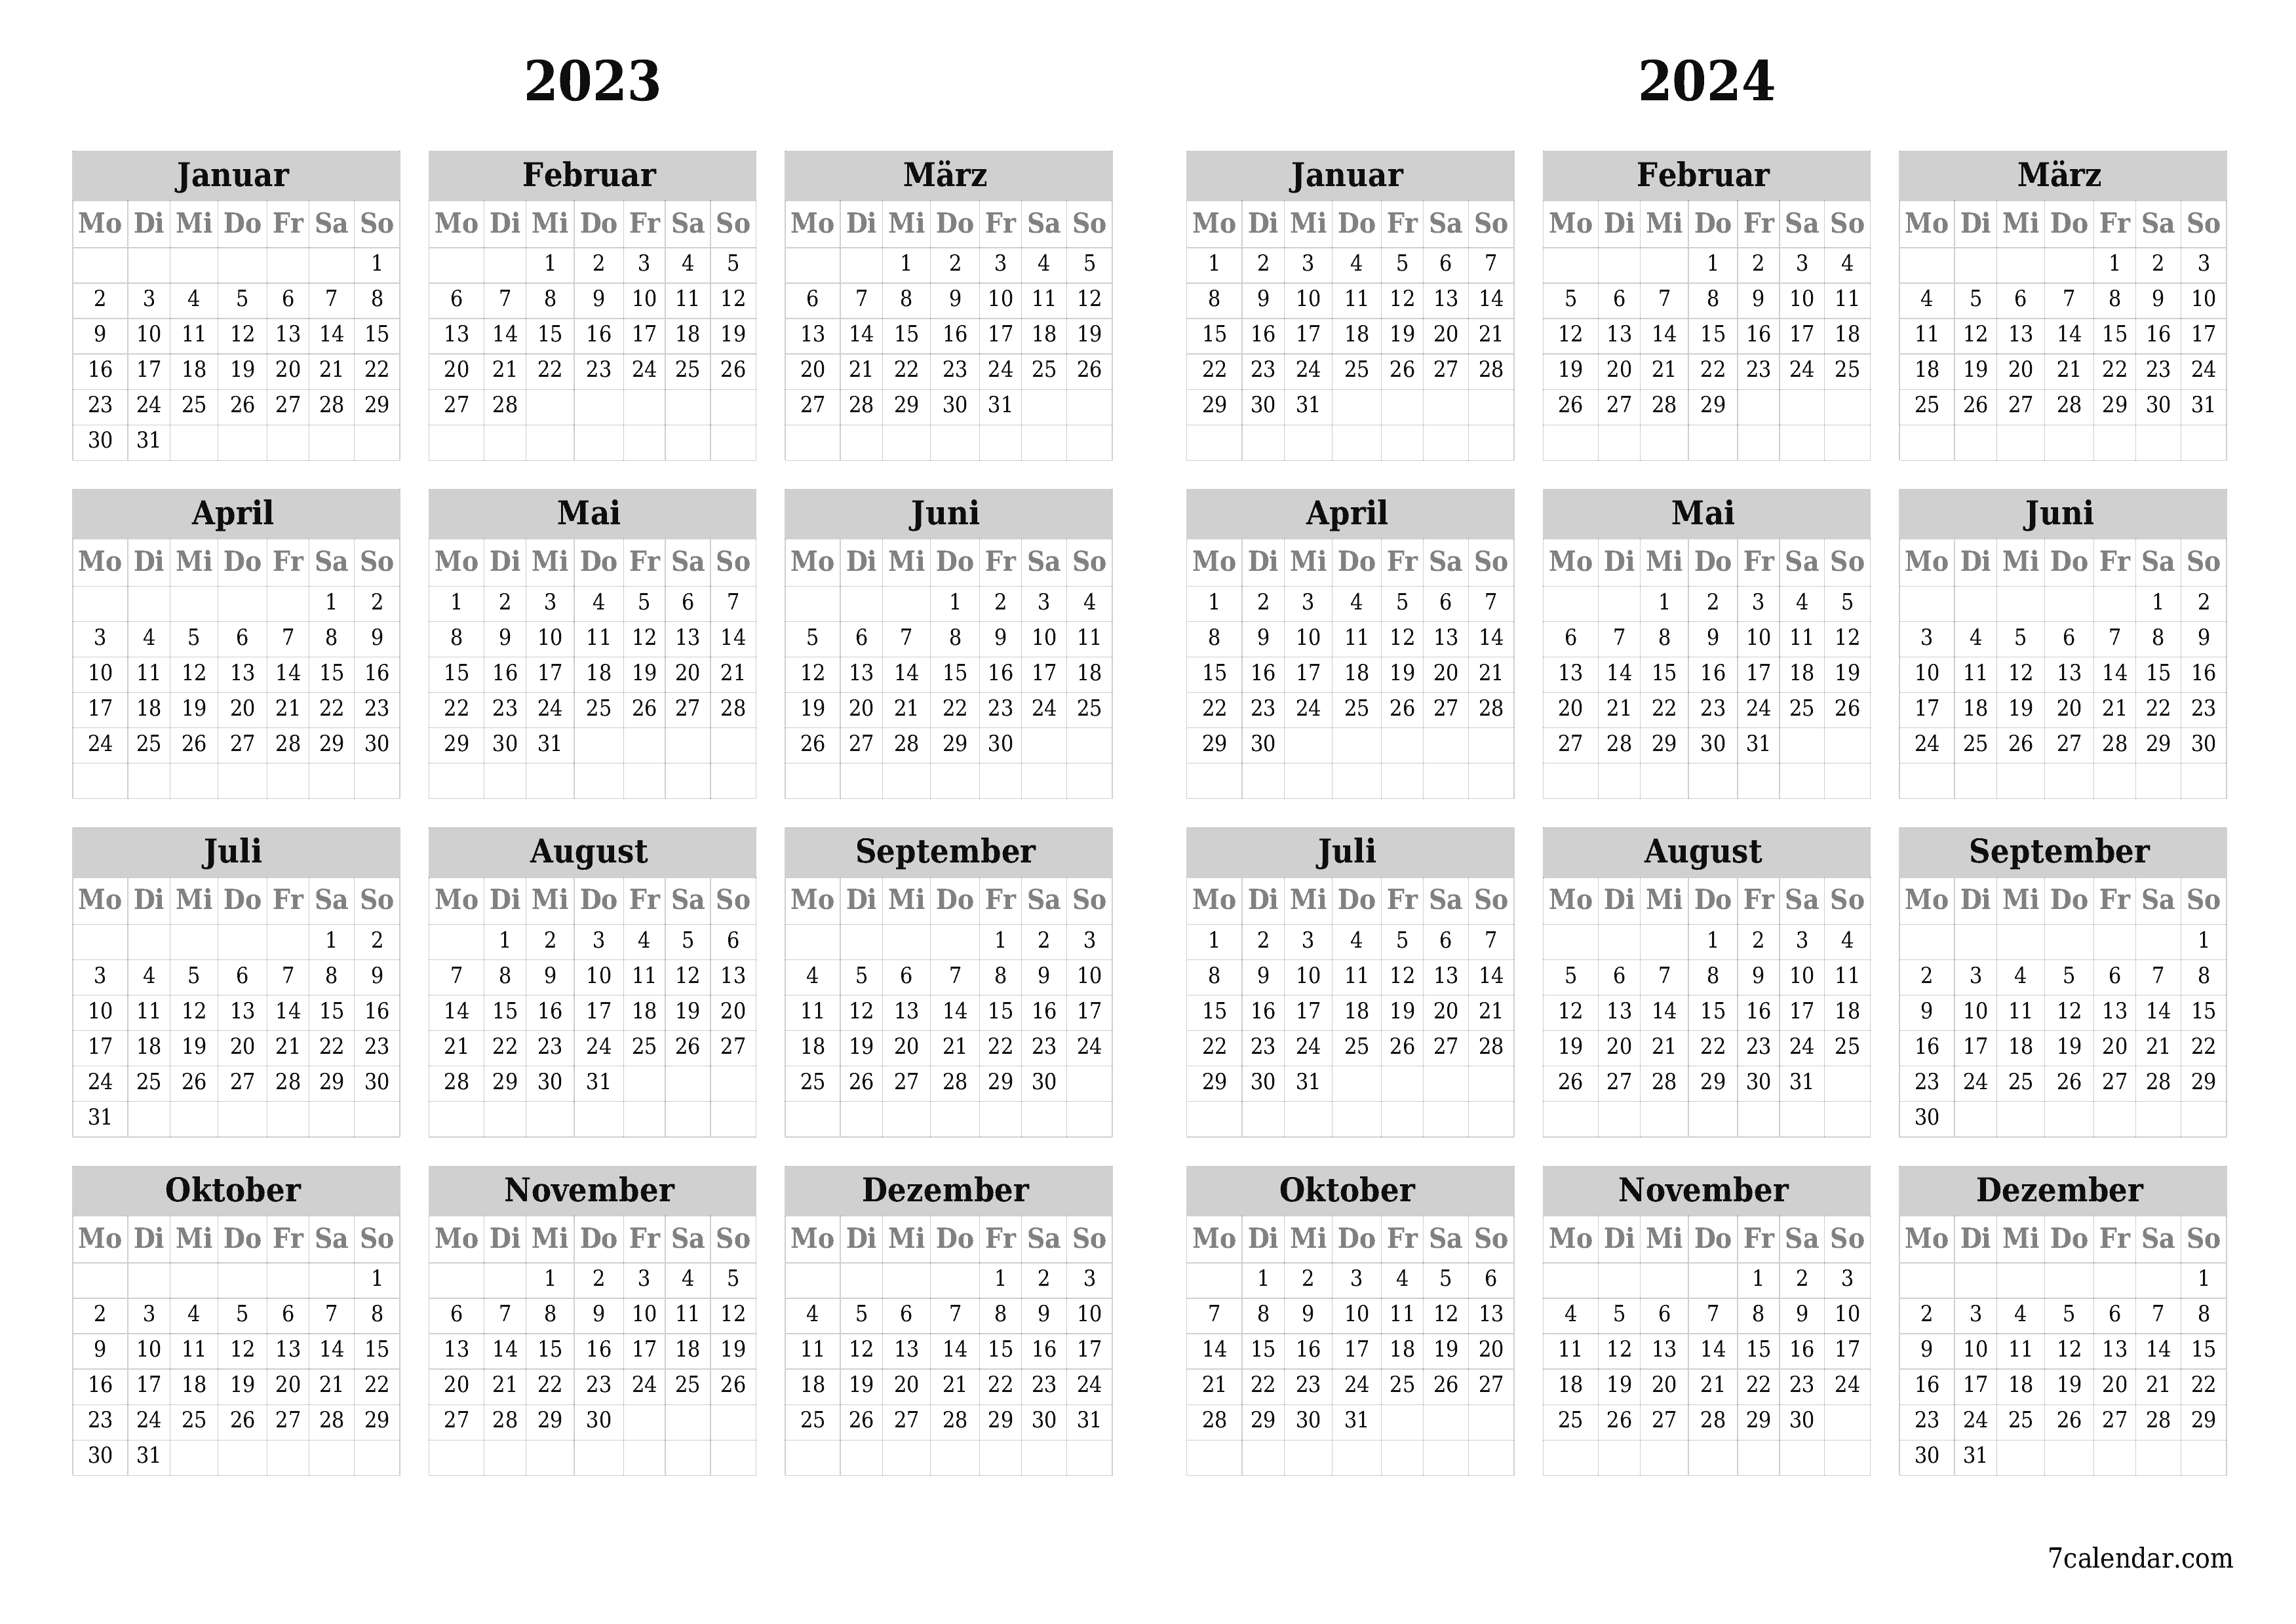  zum Ausdrucken Wandkalender vorlage kostenloser horizontal Jahreskalender Kalender März (Mär) 2023